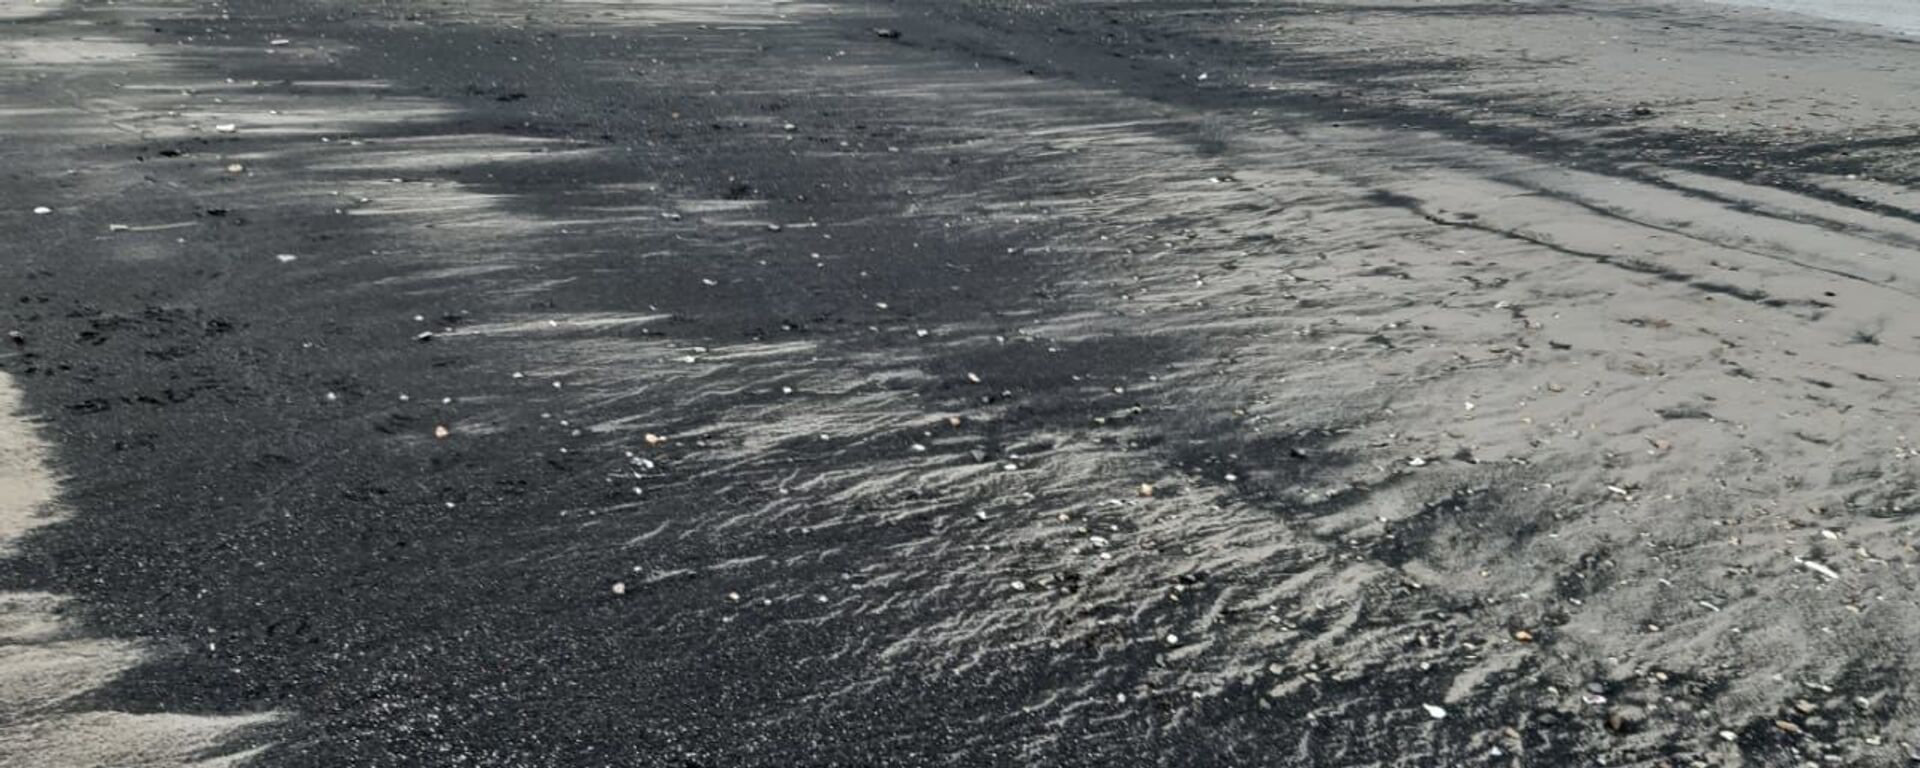 Varamietnos de carbón en la Bahía de Quintero, Chile - Sputnik Mundo, 1920, 11.07.2019